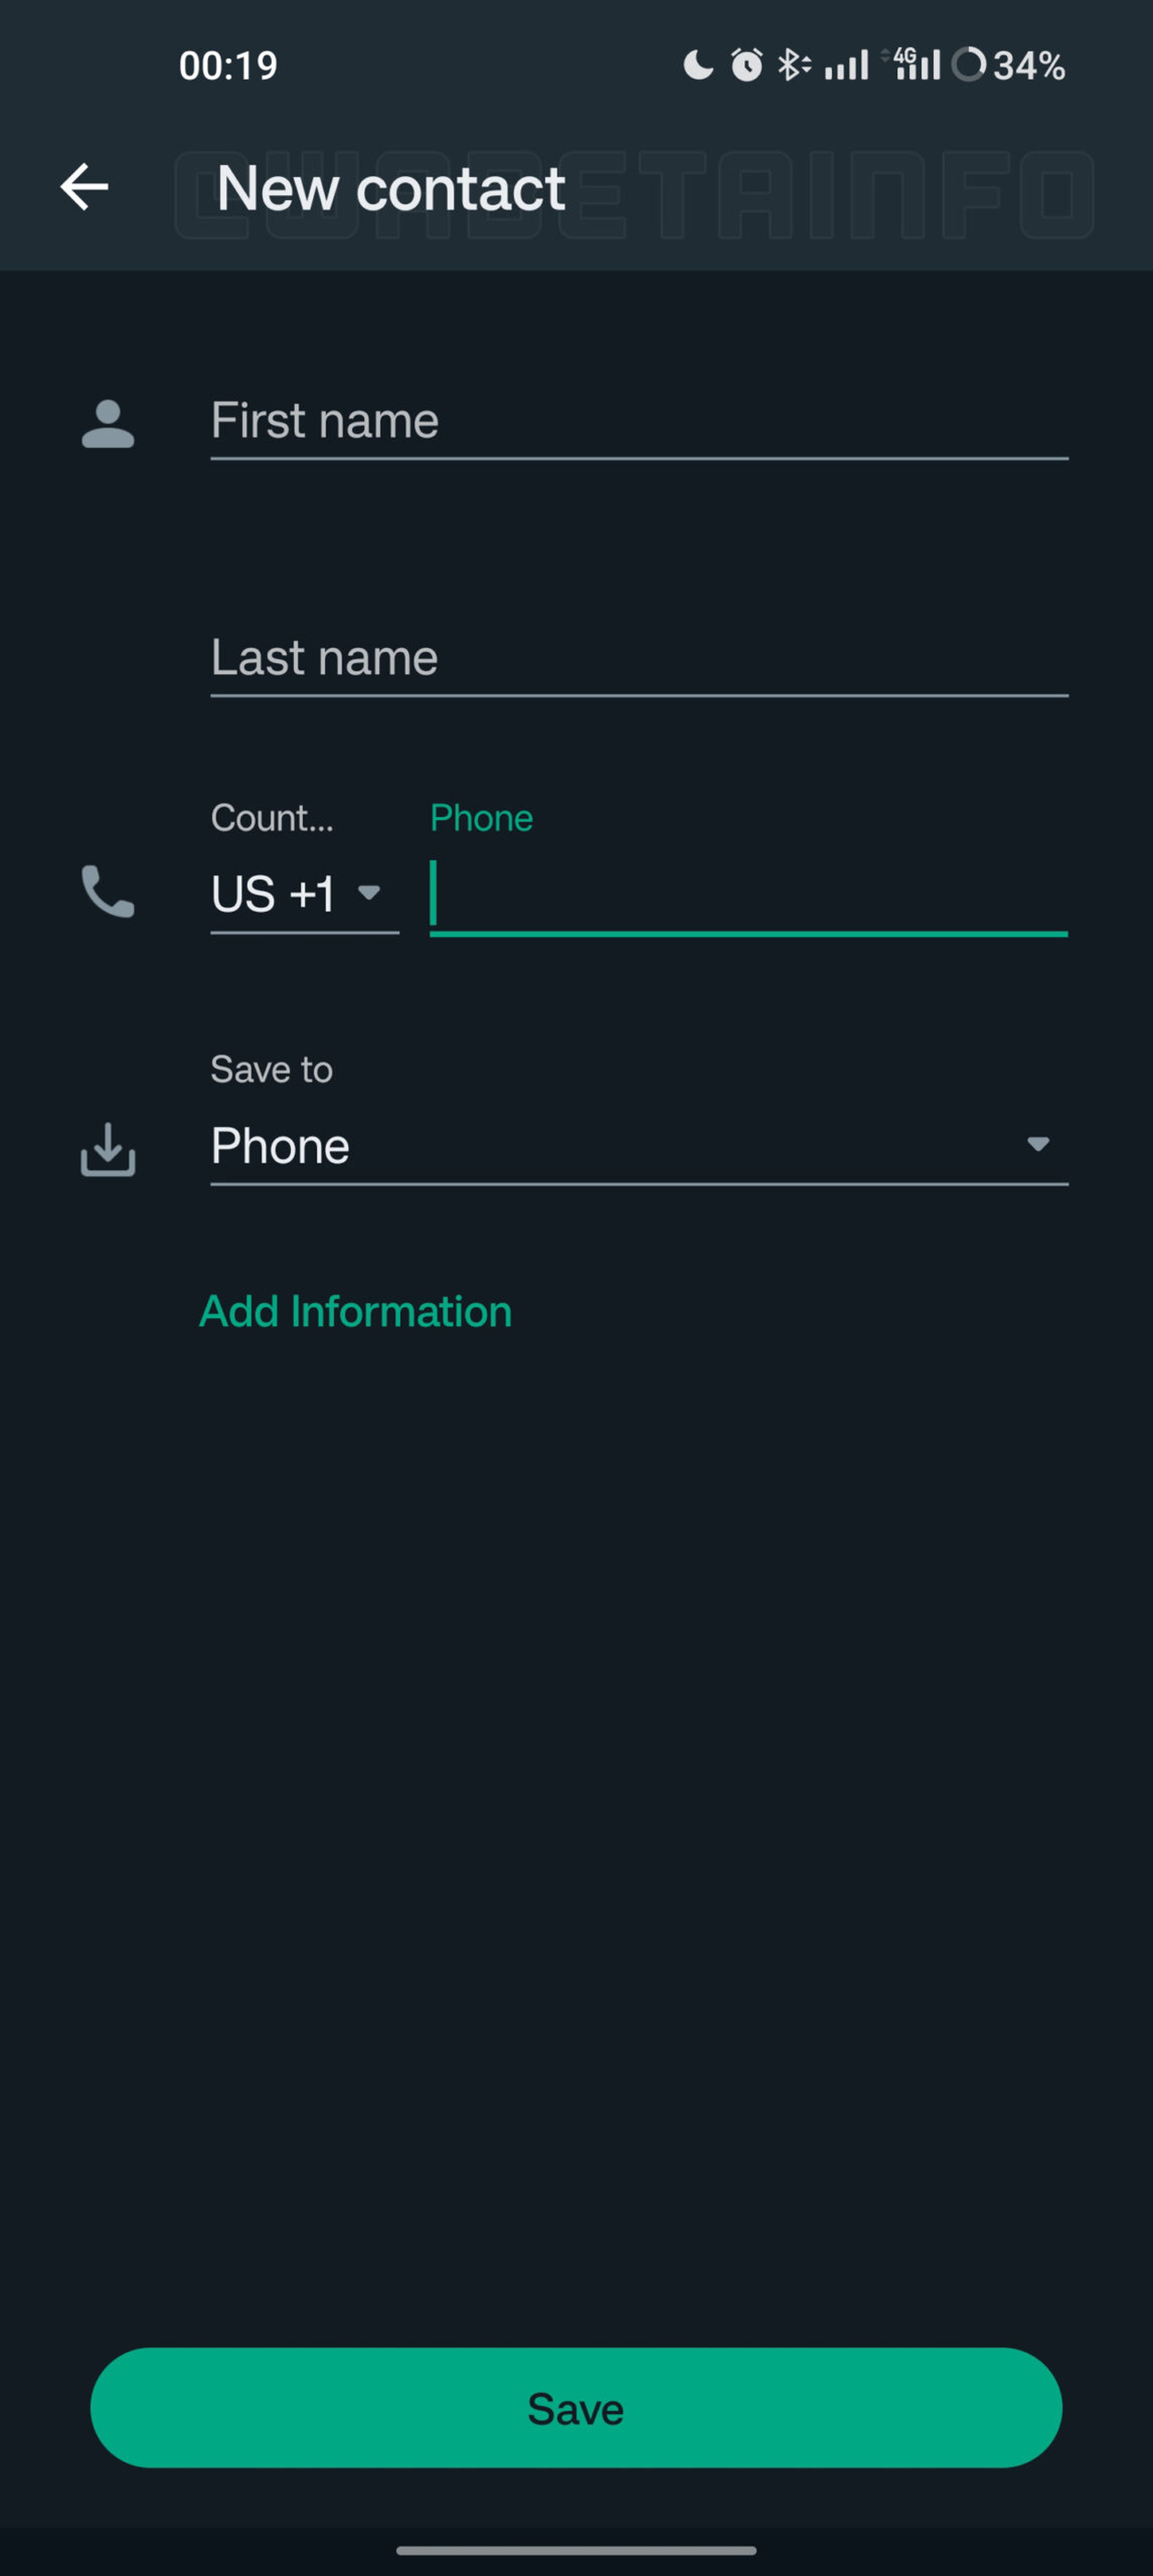 Vas a poder agregar y editar contactos dentro de la aplicación de WhatsApp